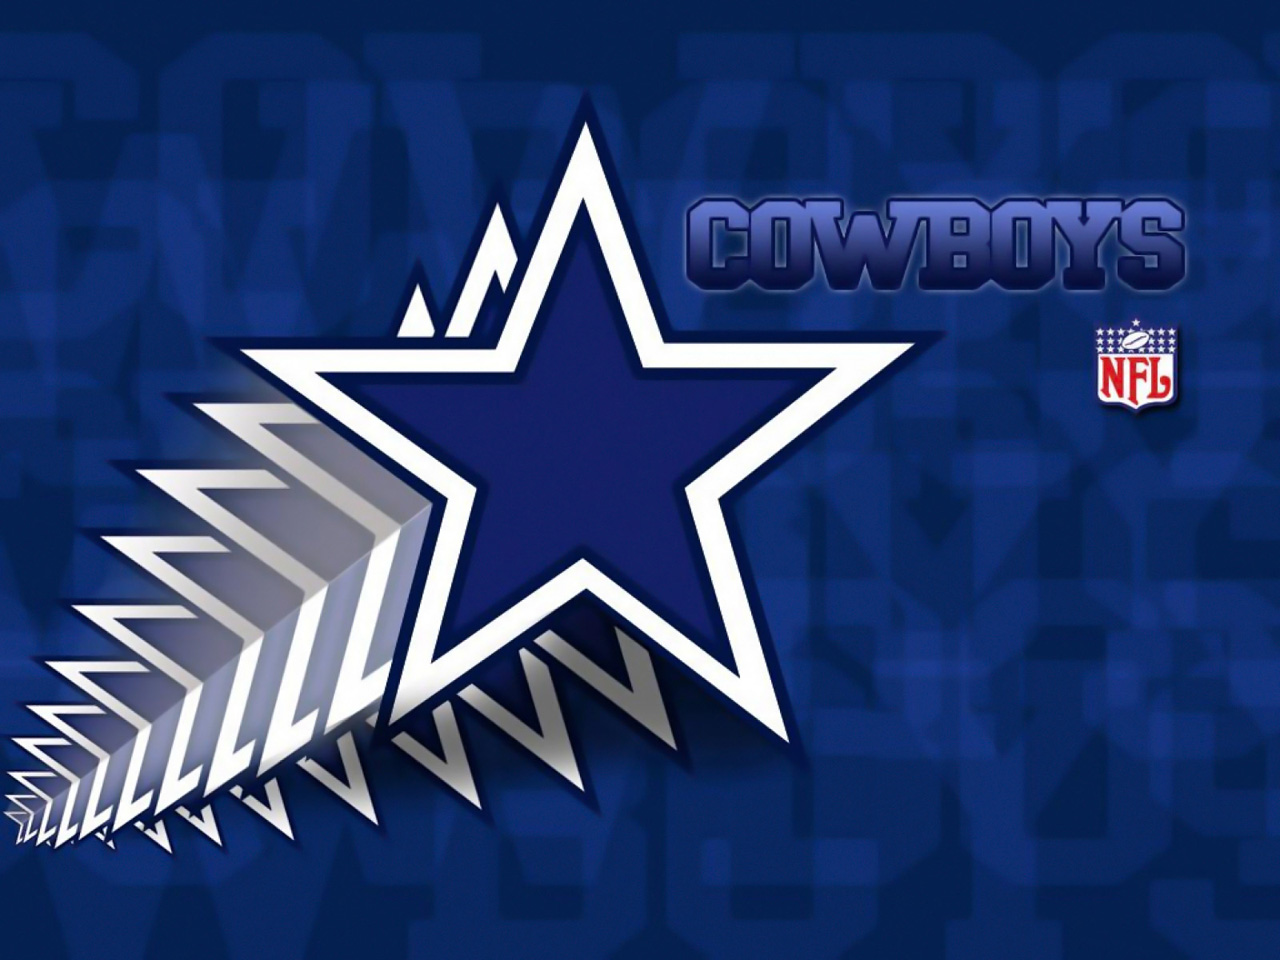 Free download Free Dallas Cowboys background image Dallas Cowboys